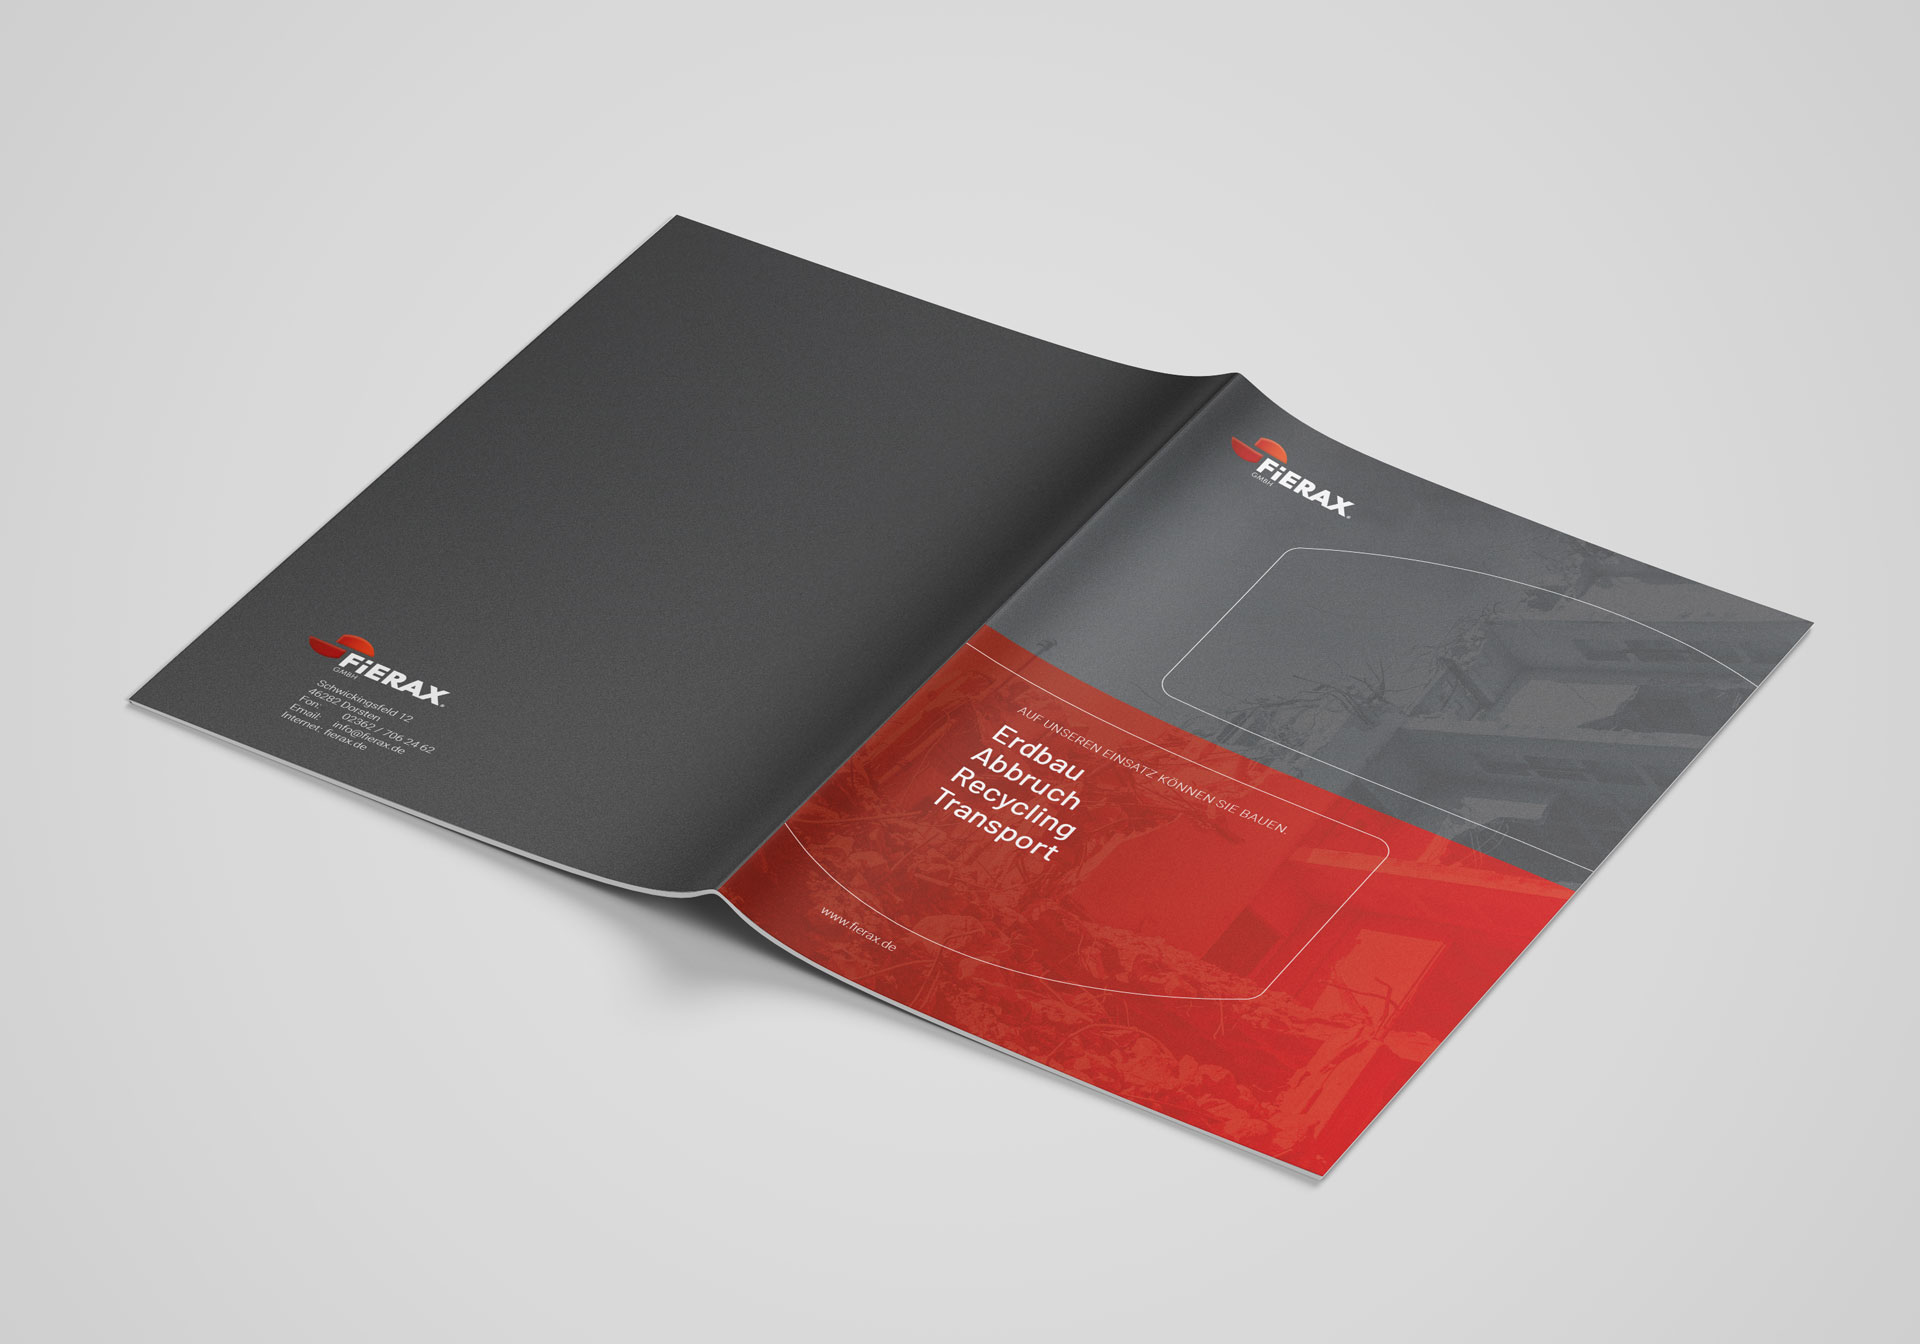 fierax-ask2-brochure-title